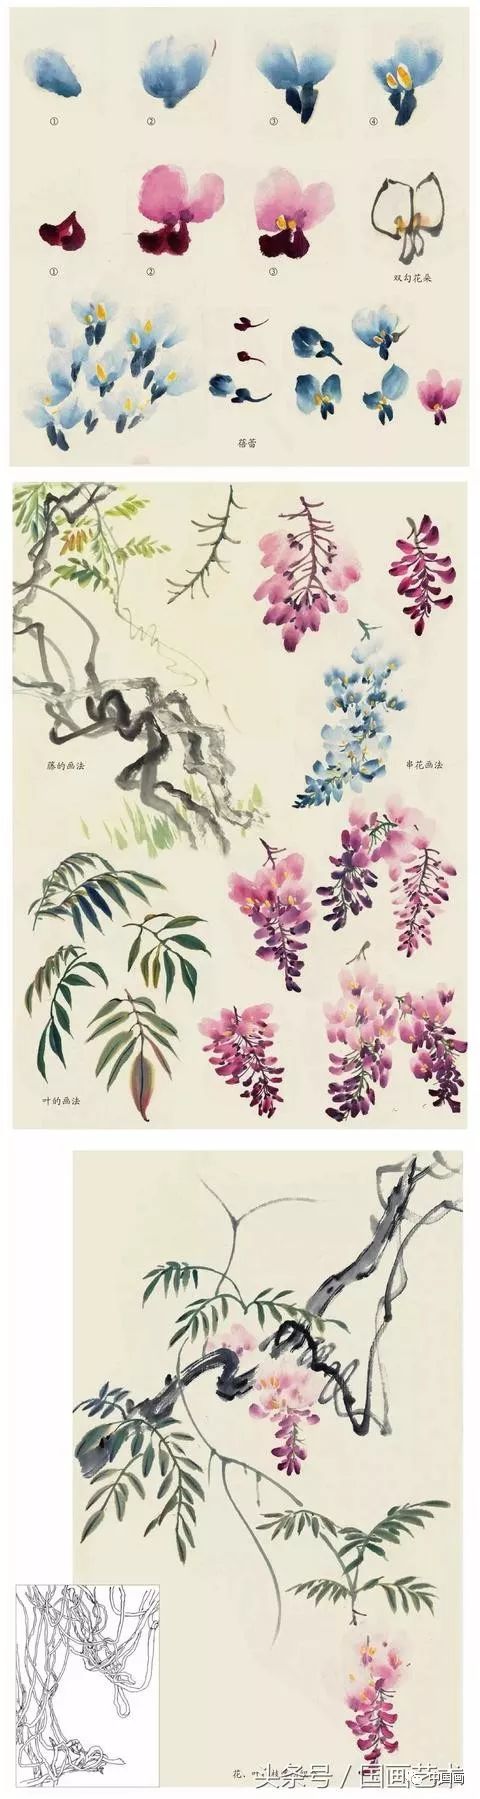 水仙,玉兰,芍药等8种花卉写意画法图解